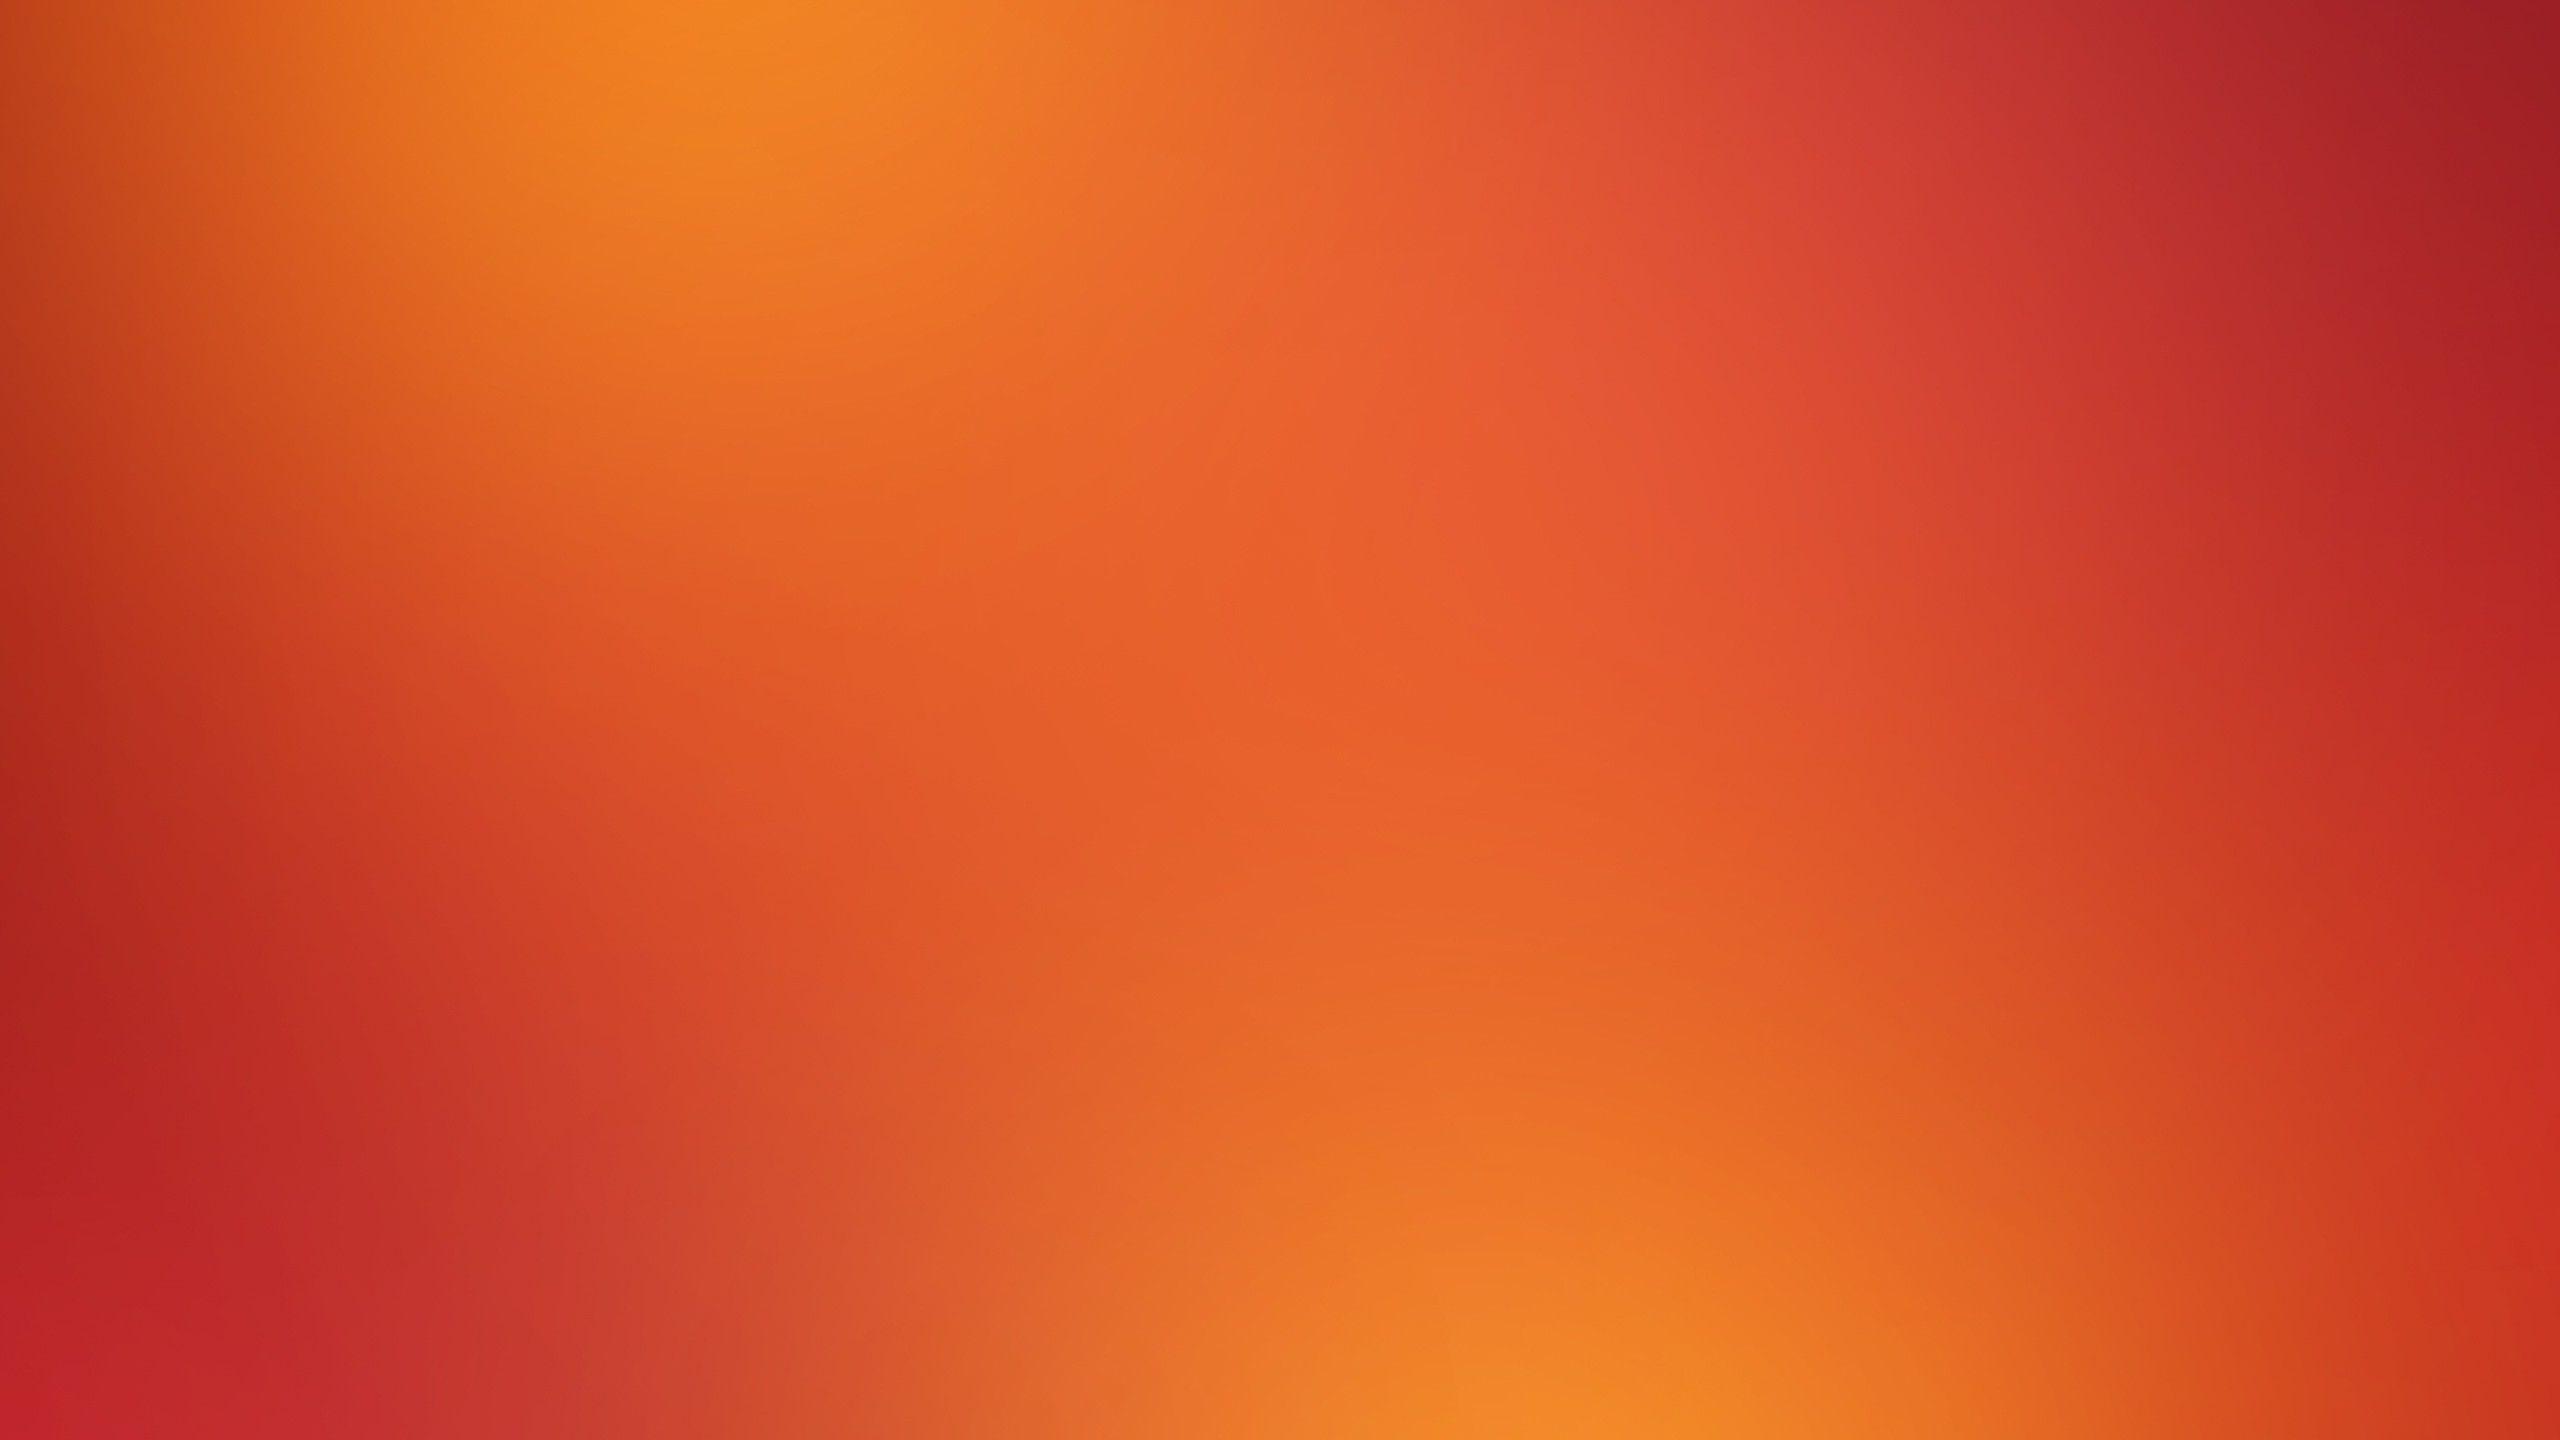 Hình nền đỏ và cam đang trở thành lựa chọn phổ biến cho nhiều người dùng trong thời gian gần đây. Với sự kết hợp độc đáo giữa màu đỏ nổi bật và cam tinh tế, chúng tôi đã tìm kiếm những mẫu hình nền đẹp nhất cho bạn. Tên nhất là đây!